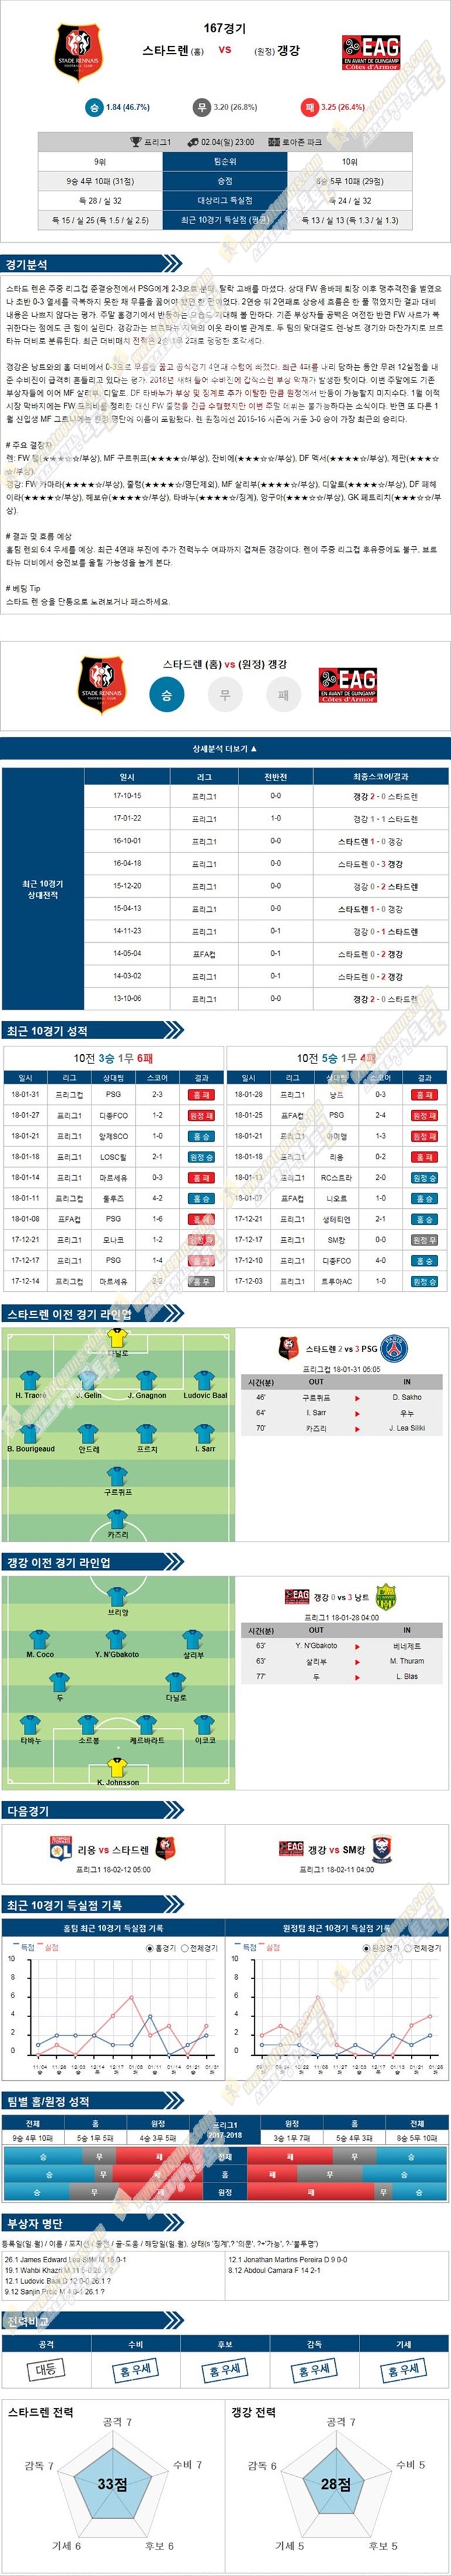 [리그앙] 2월 4일 23:00 축구분석 스타드 렌 vs 갱강